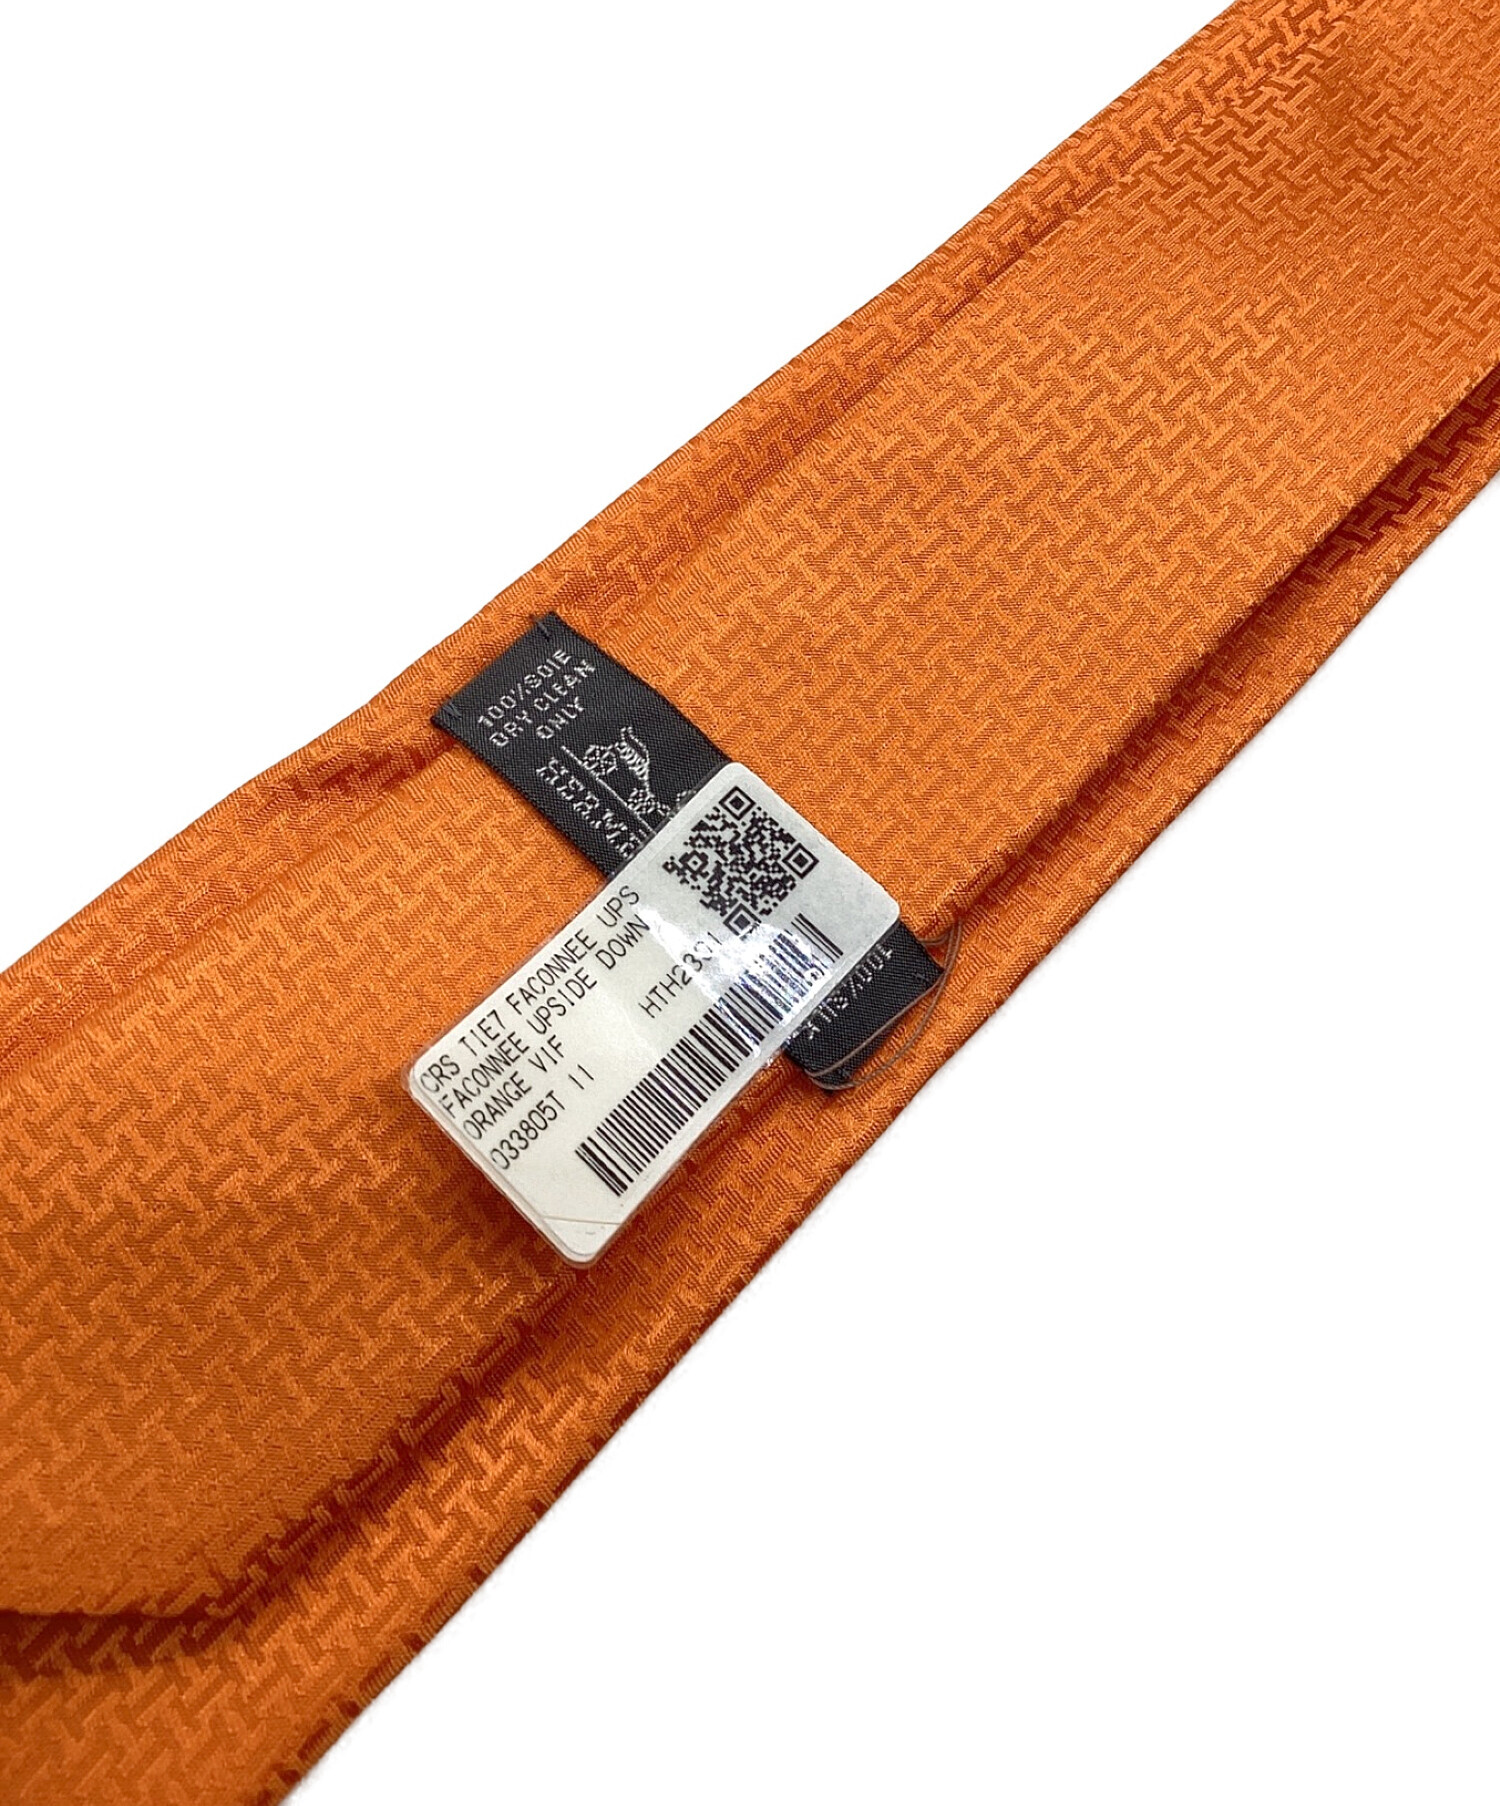 新品 エルメス ネクタイ オレンジ 袋付き Hermes 正規品 本物 みかん色